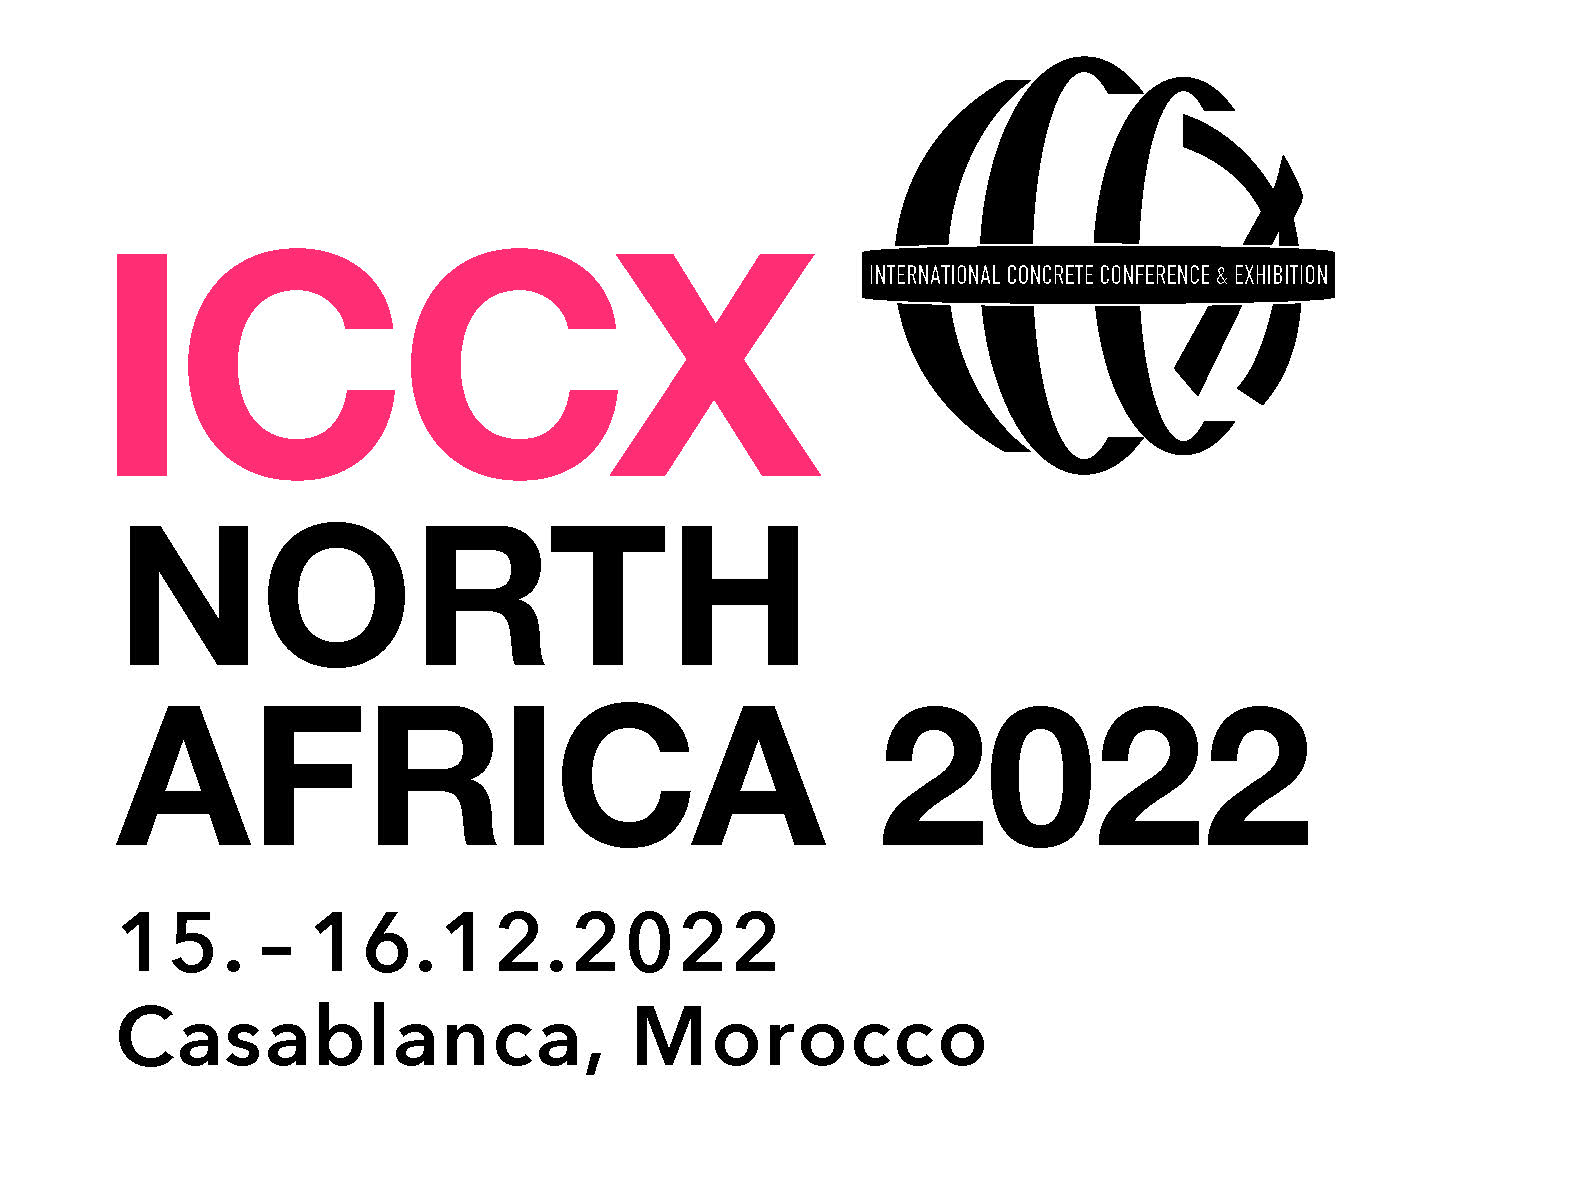 ICCX NORTH AFRICA 2022